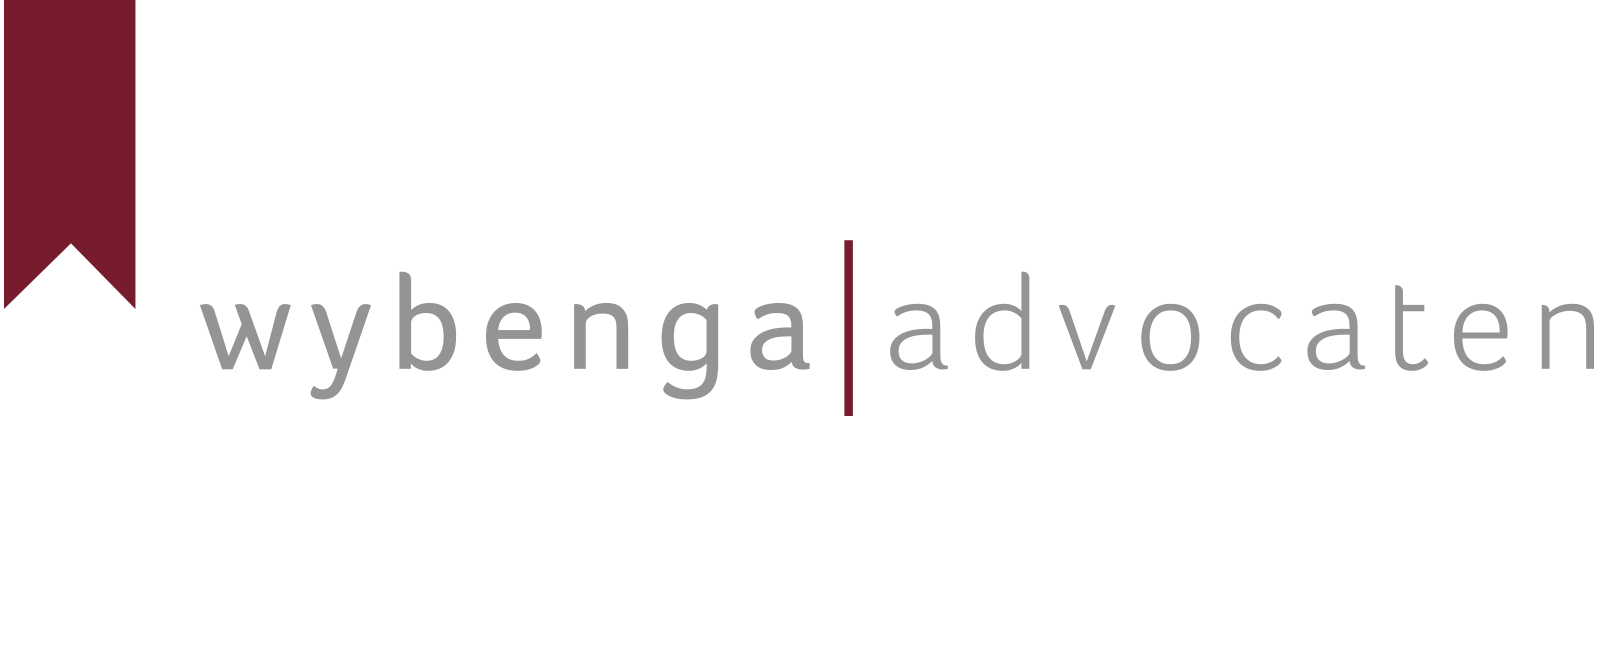 Wybenga | advocaten